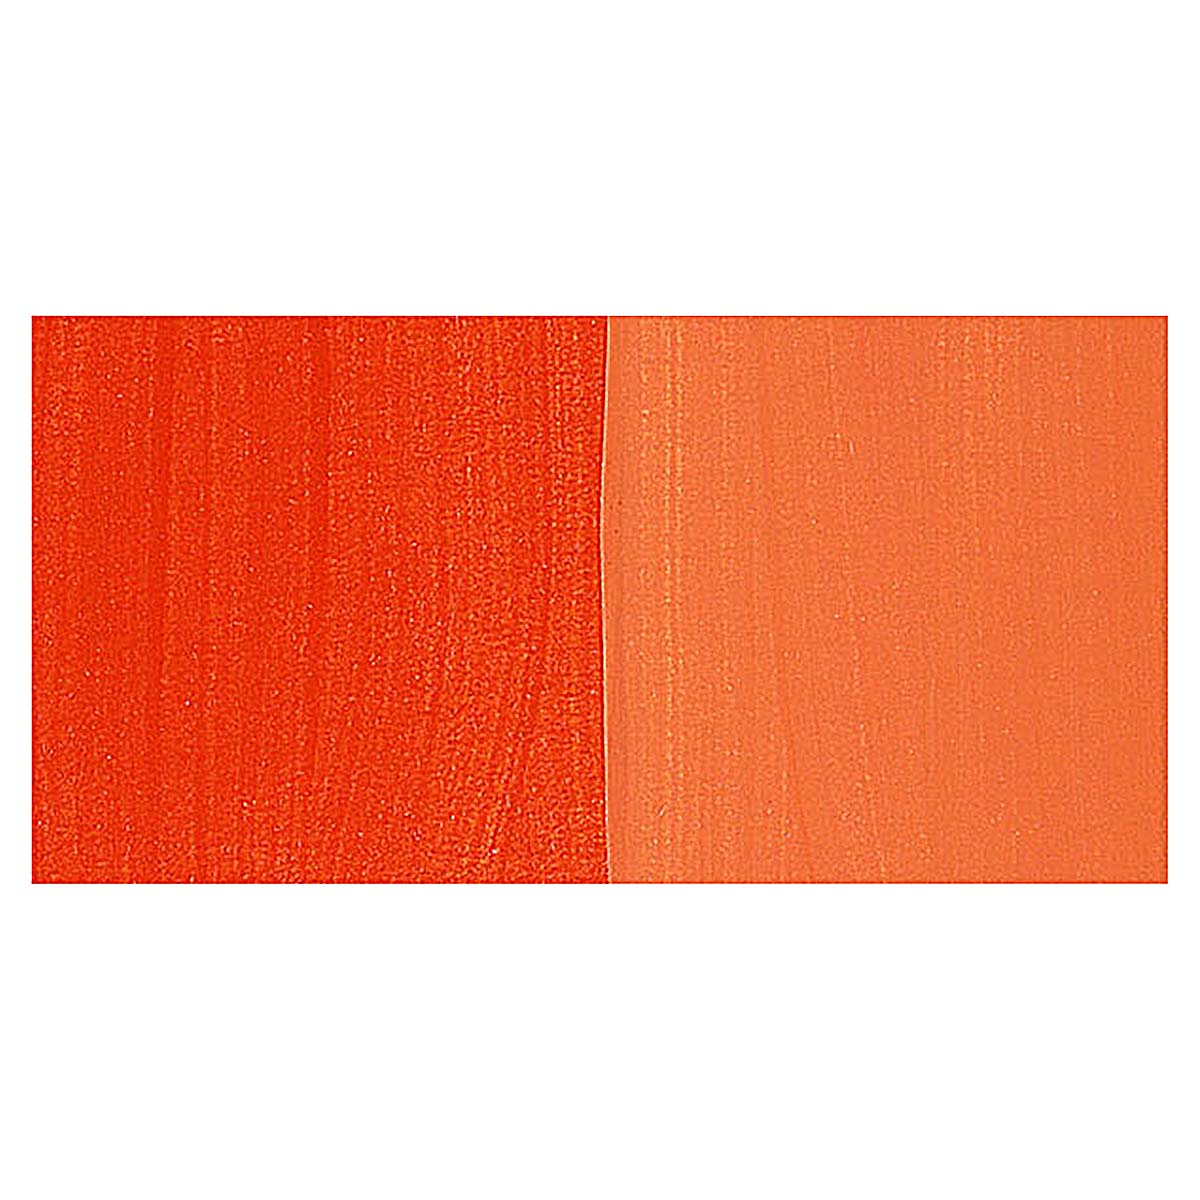 Da Vinci Cadmium Red Light Hue Artist Fluid Acrylic Paint – 16oz